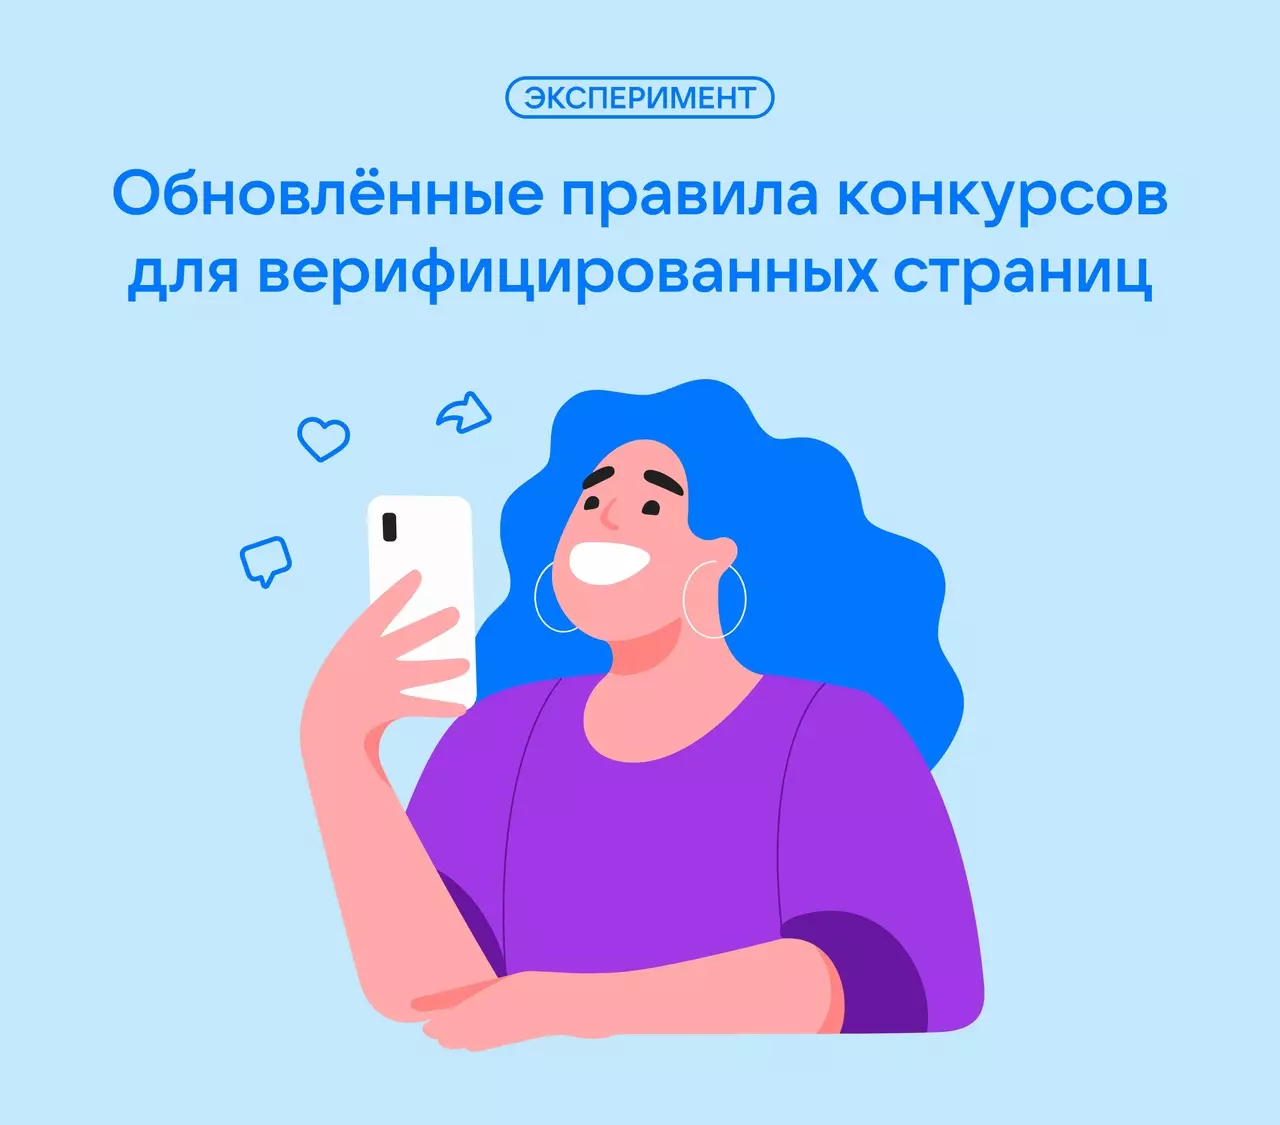 ВКонтакте обновил правила конкурсов для верифицированных сообществ